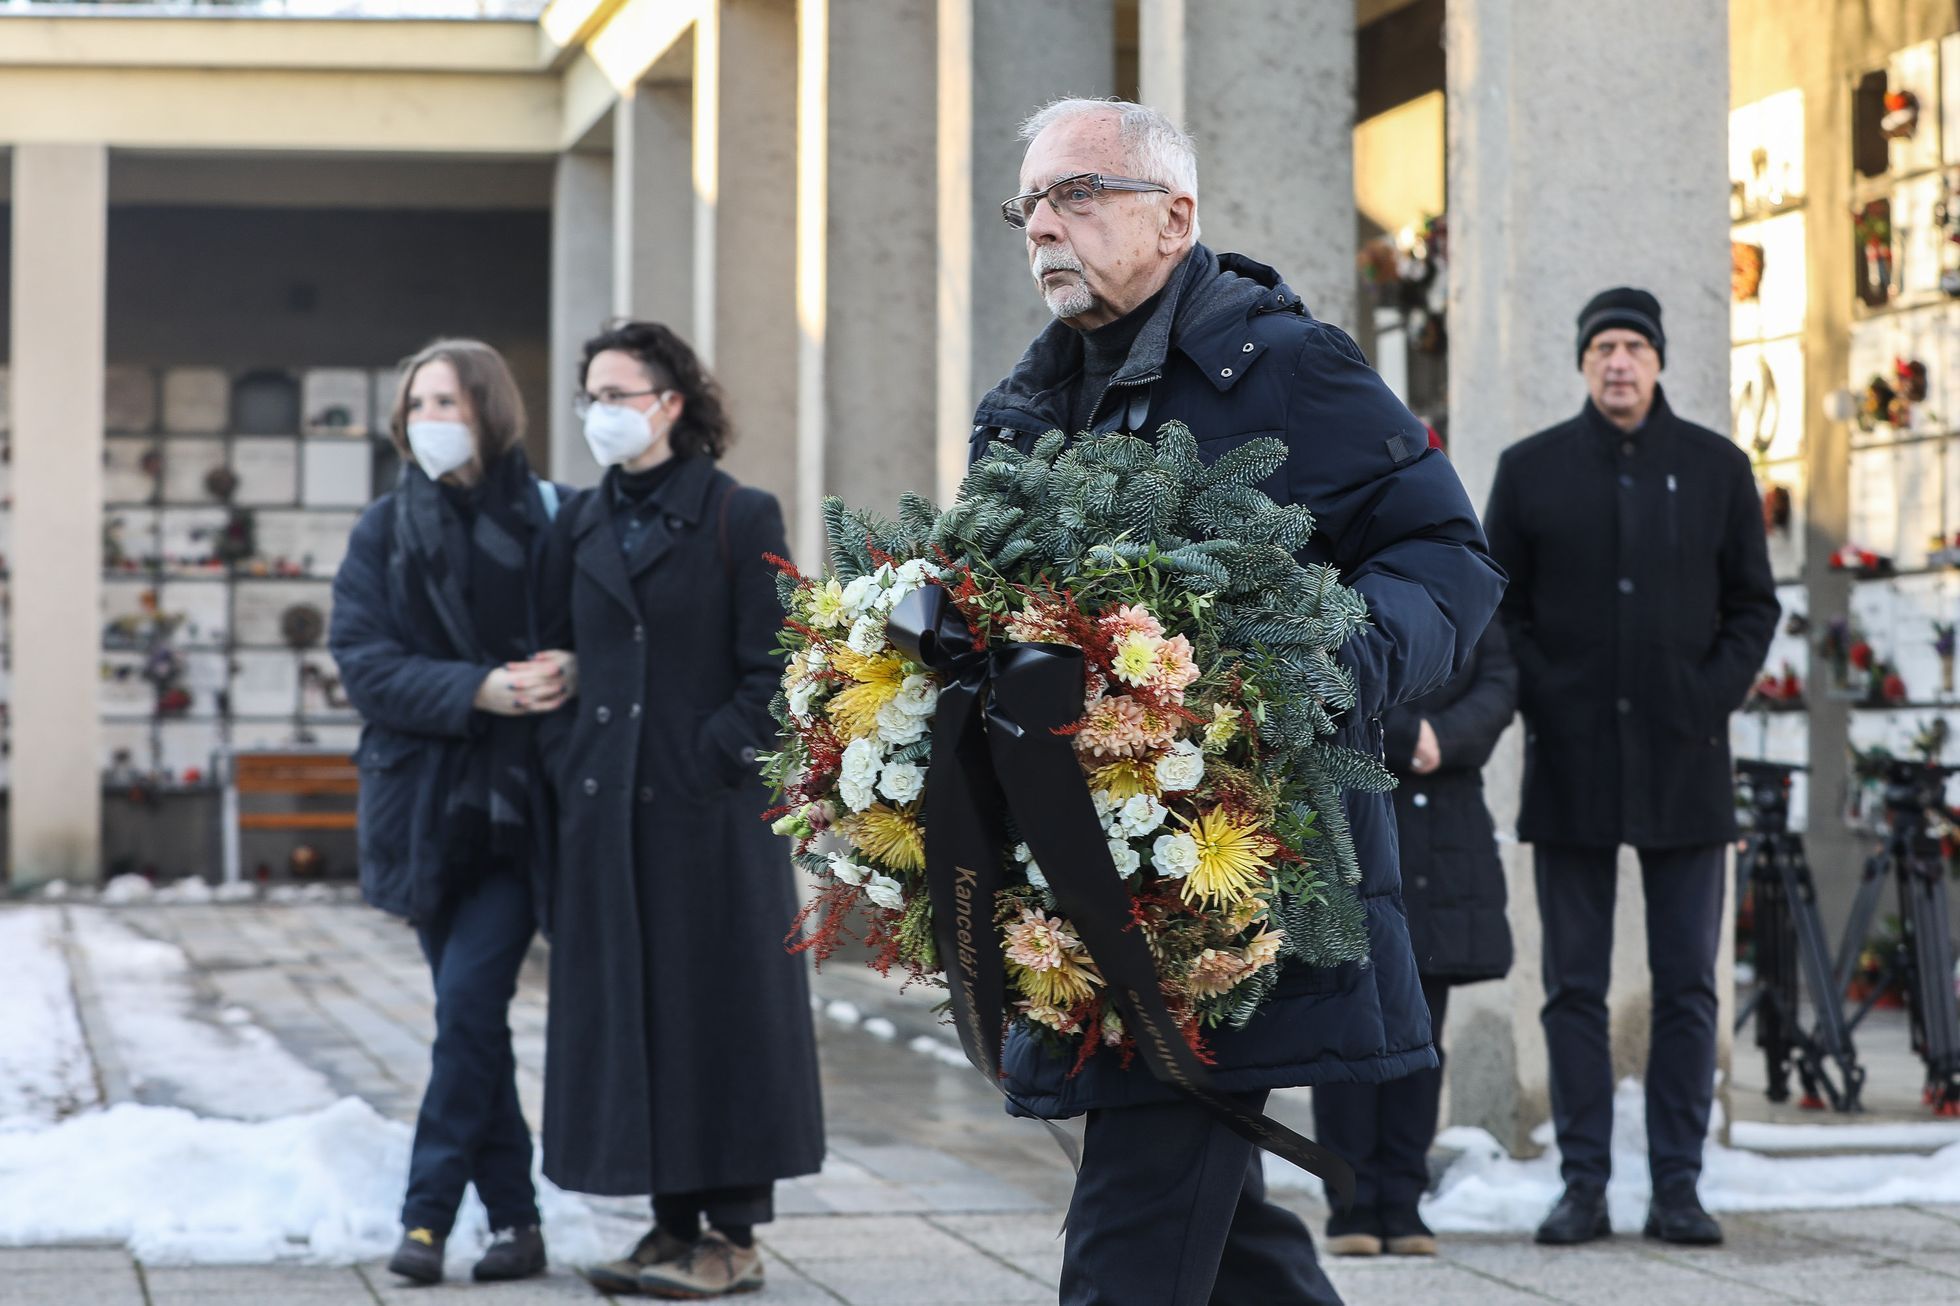 Pohřeb Petr Uhl, poslední rozloučení, krematorium Strašnice, 10. 12. 2021